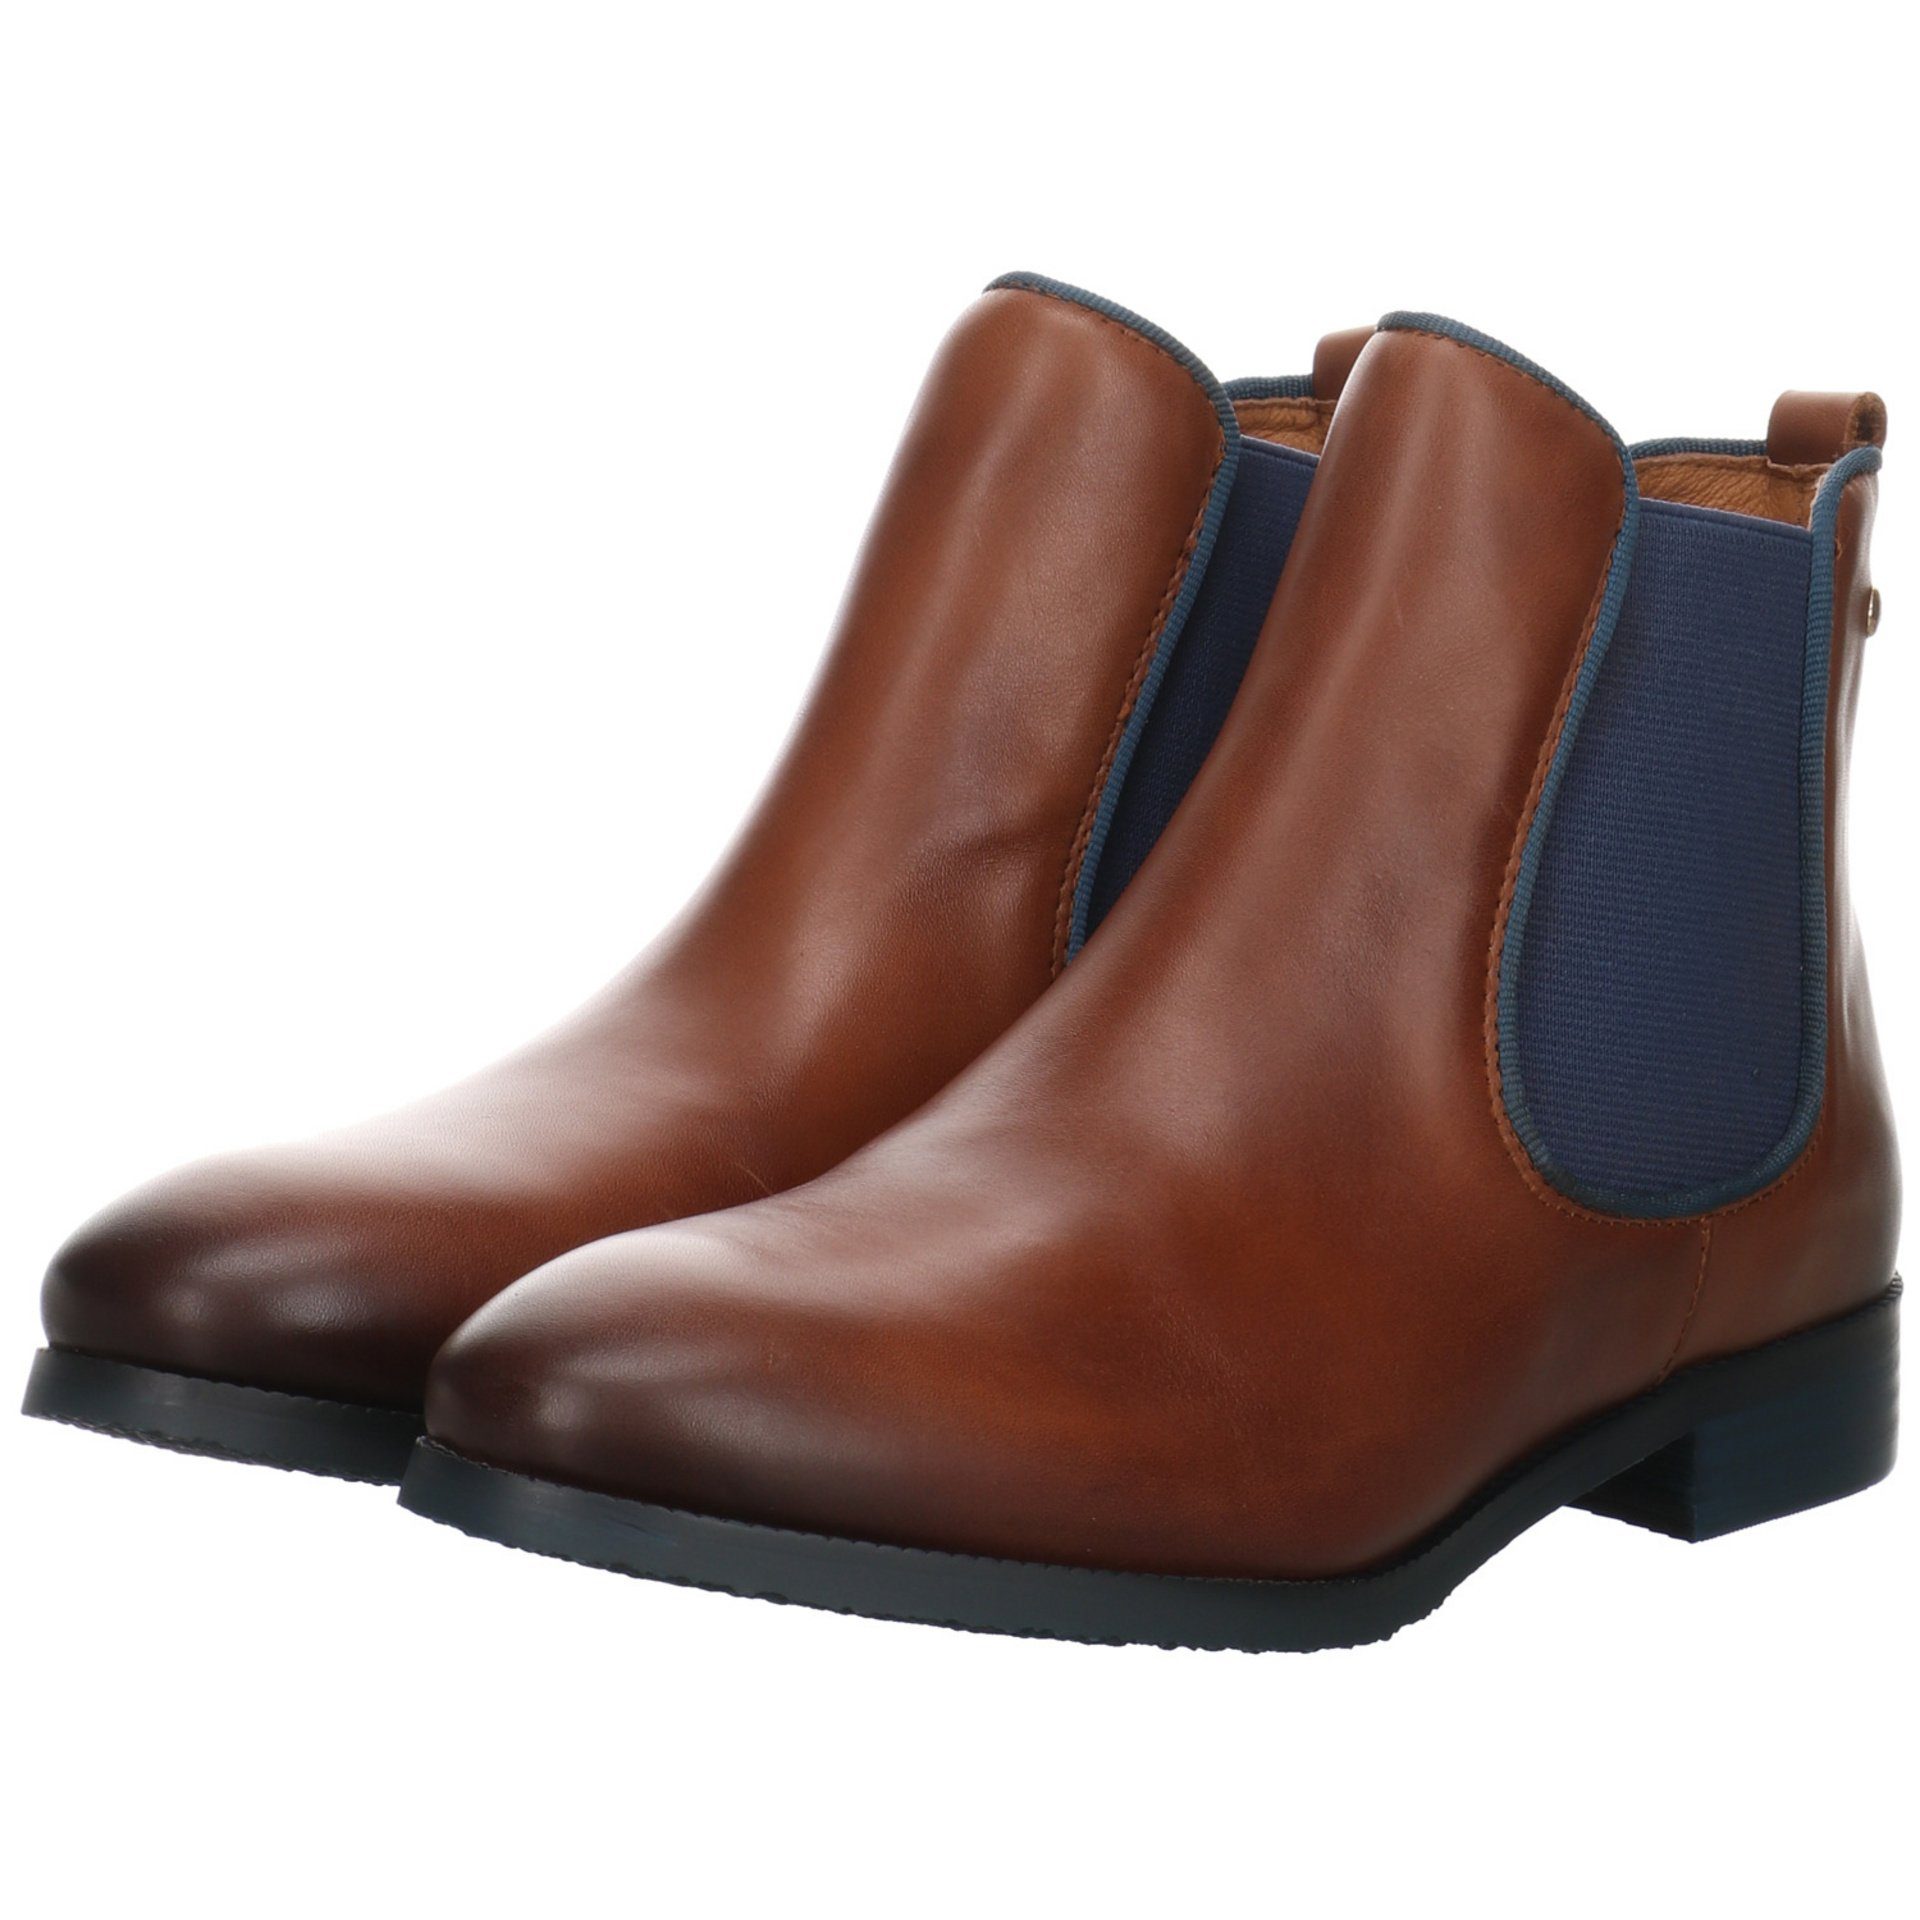 Schuhe Leder-/Textilkombination Chelsea Royal Stiefeletten Damen Boots Braun PIKOLINOS Stiefelette